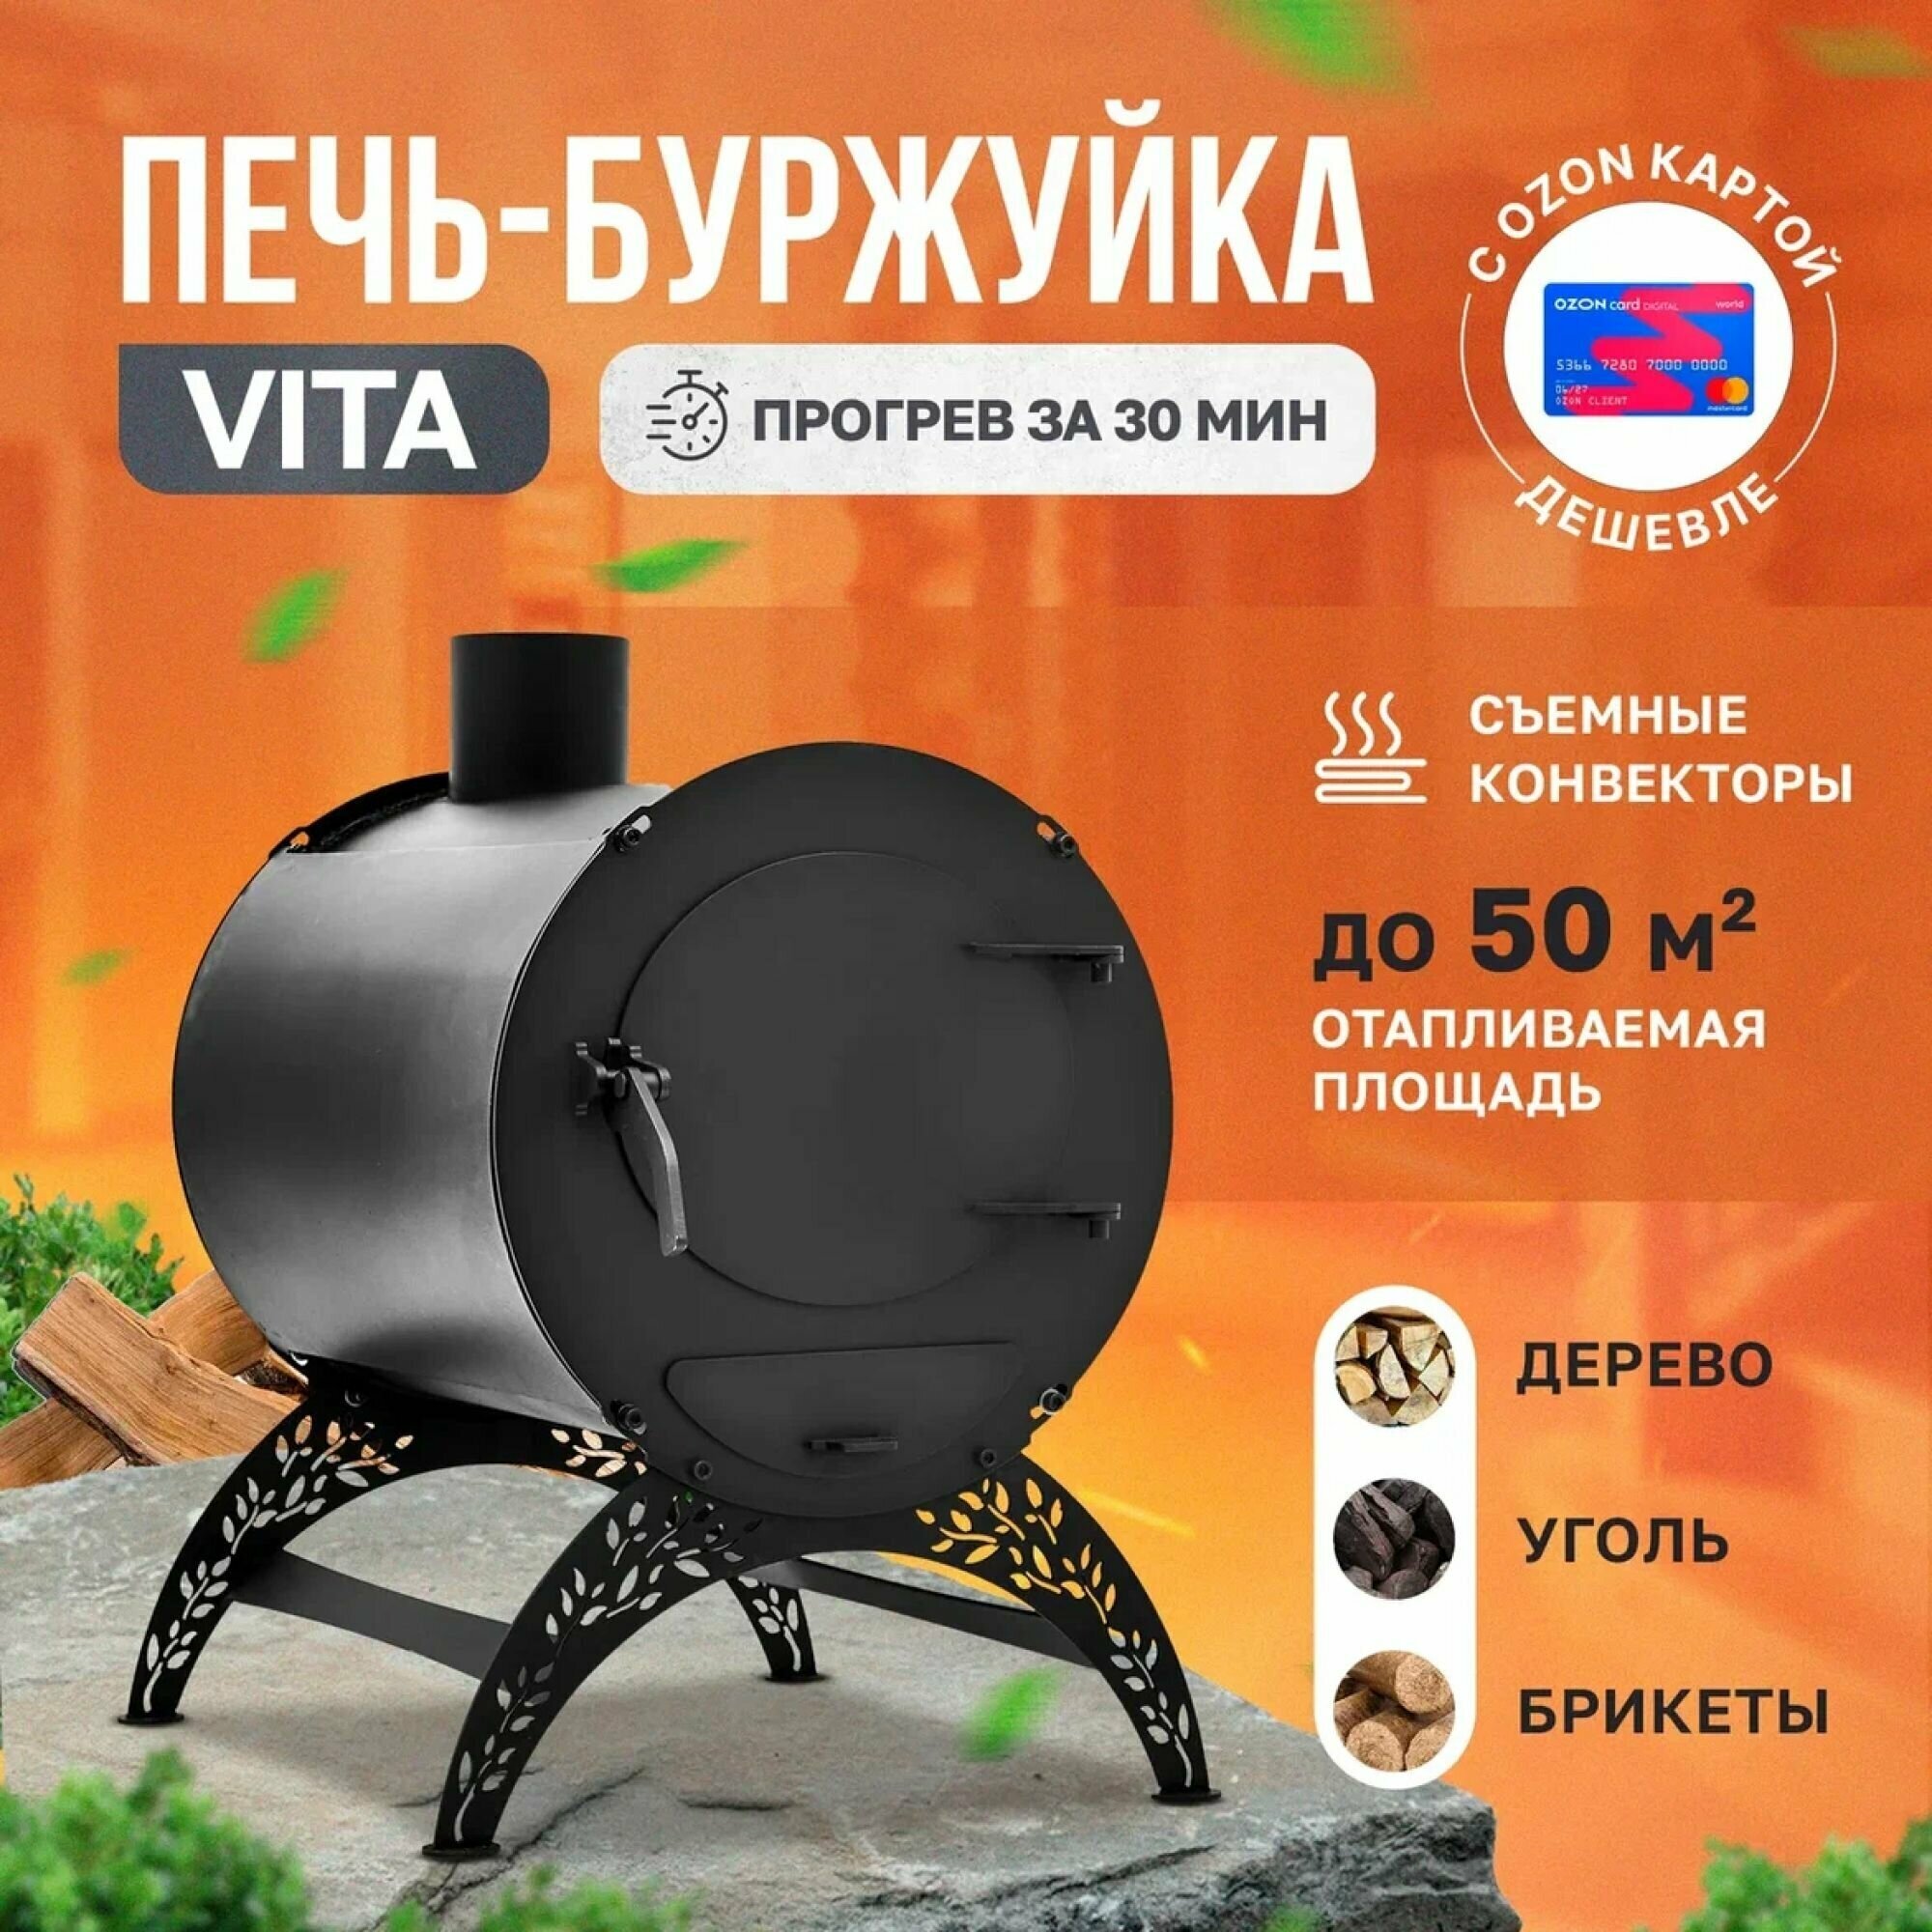 Отопительная печь-буржуйка VITA мини С конвекторами 50 м3 / дровяная печь для дома / дачи / гаража / палаток - фотография № 1